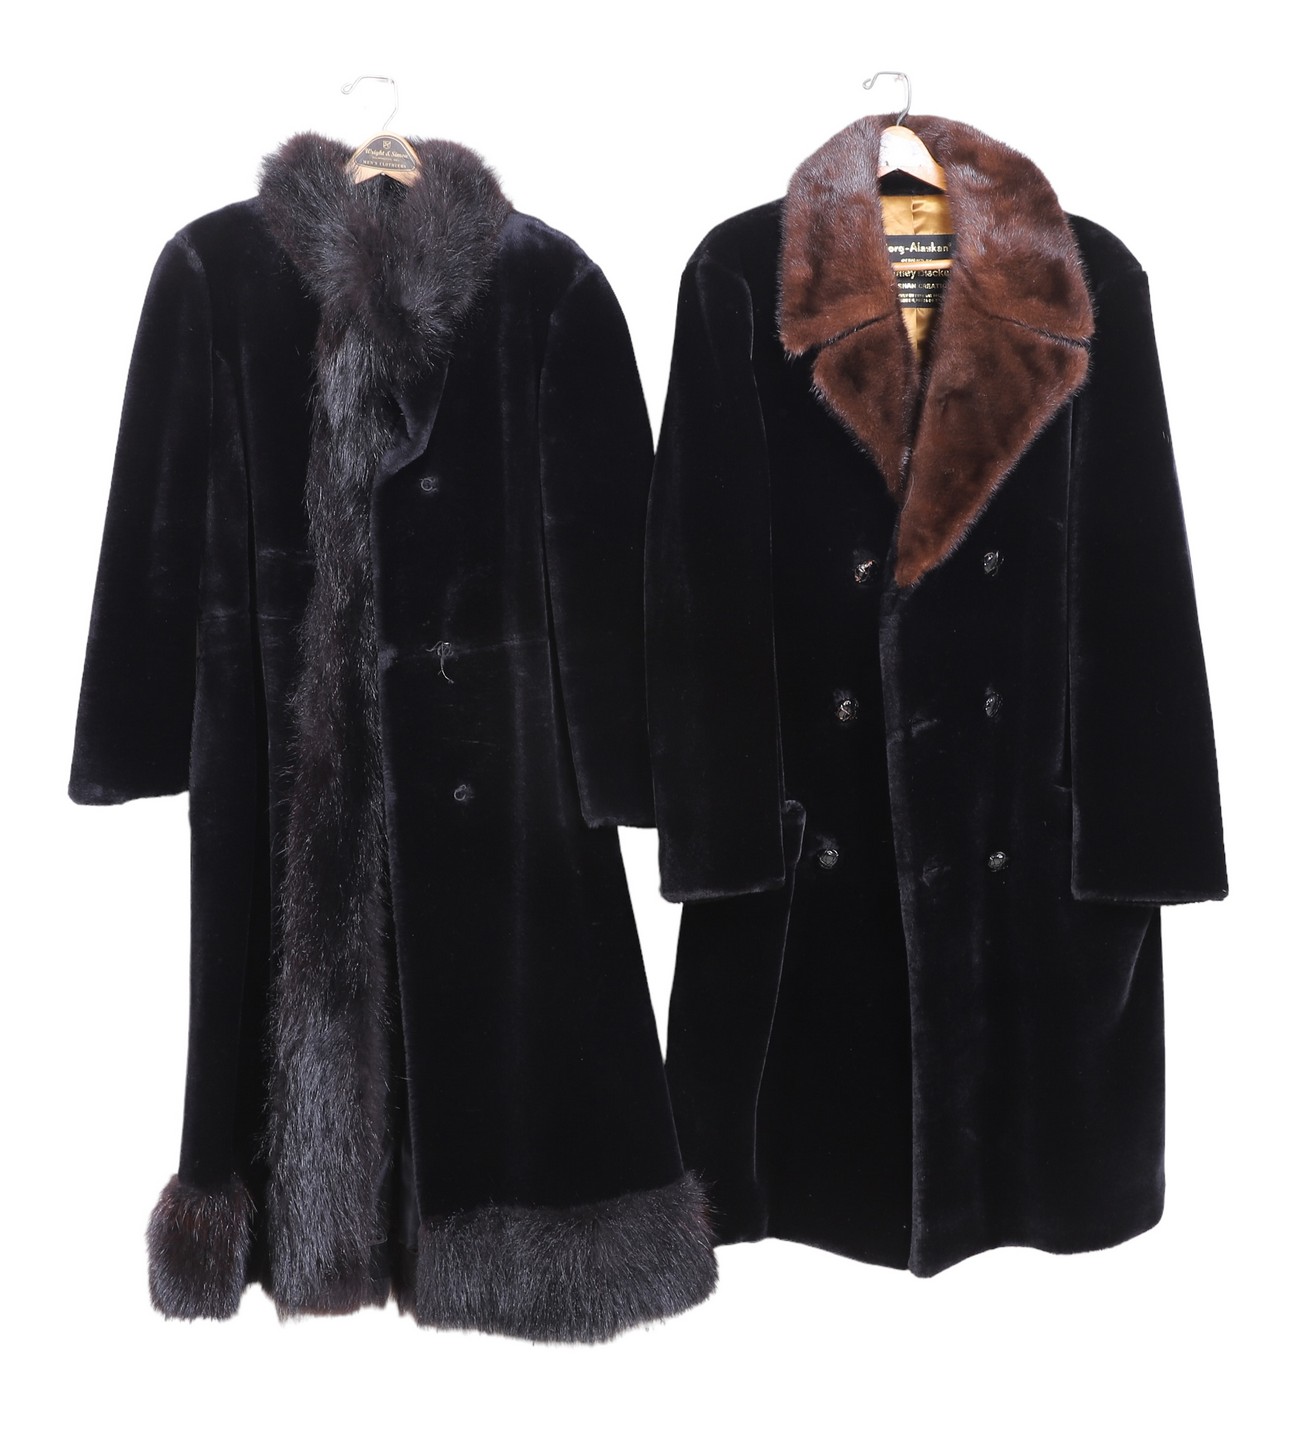 (2) Vintage teddy bear coats with